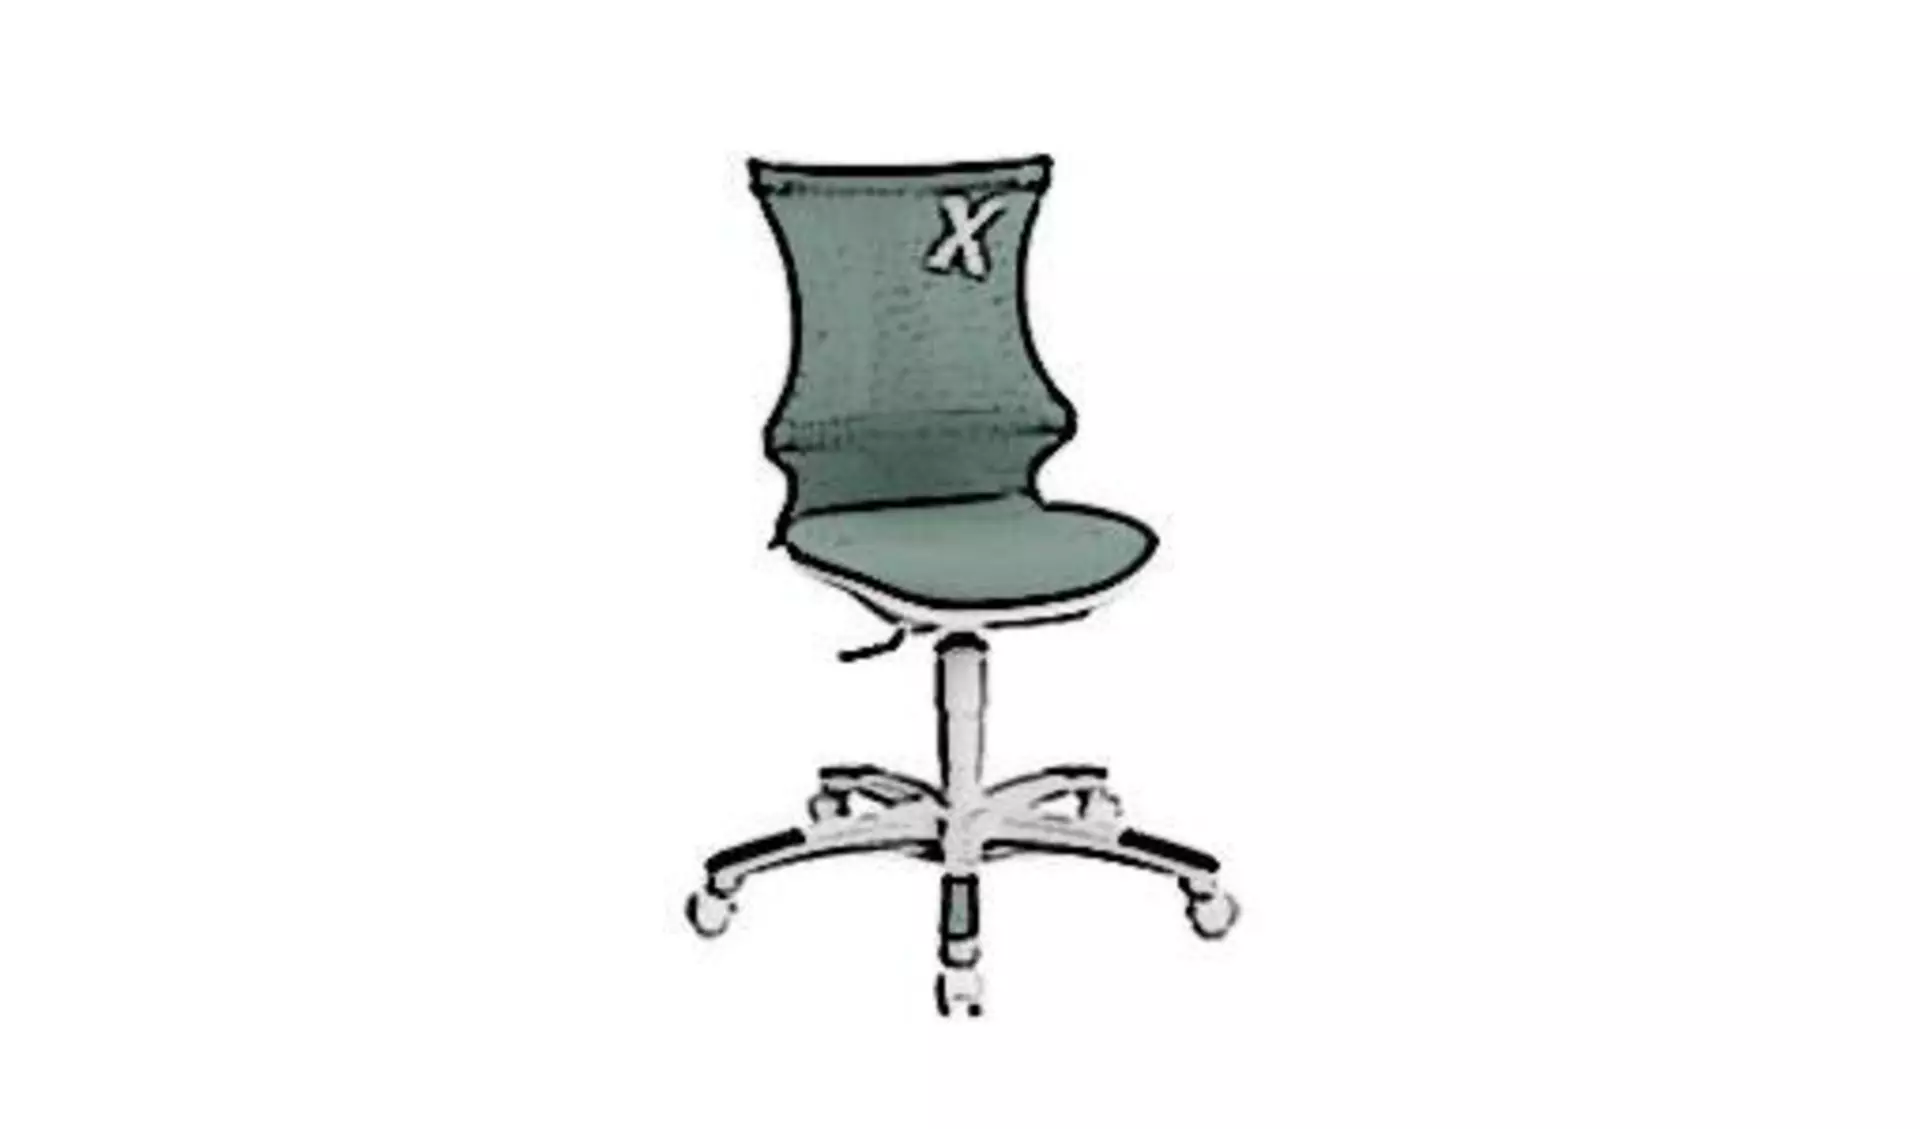 Icon für Kinderdrehstuhl zeigt einen kindgerechten Schreibtischstuhl in graugrüner Farbe.